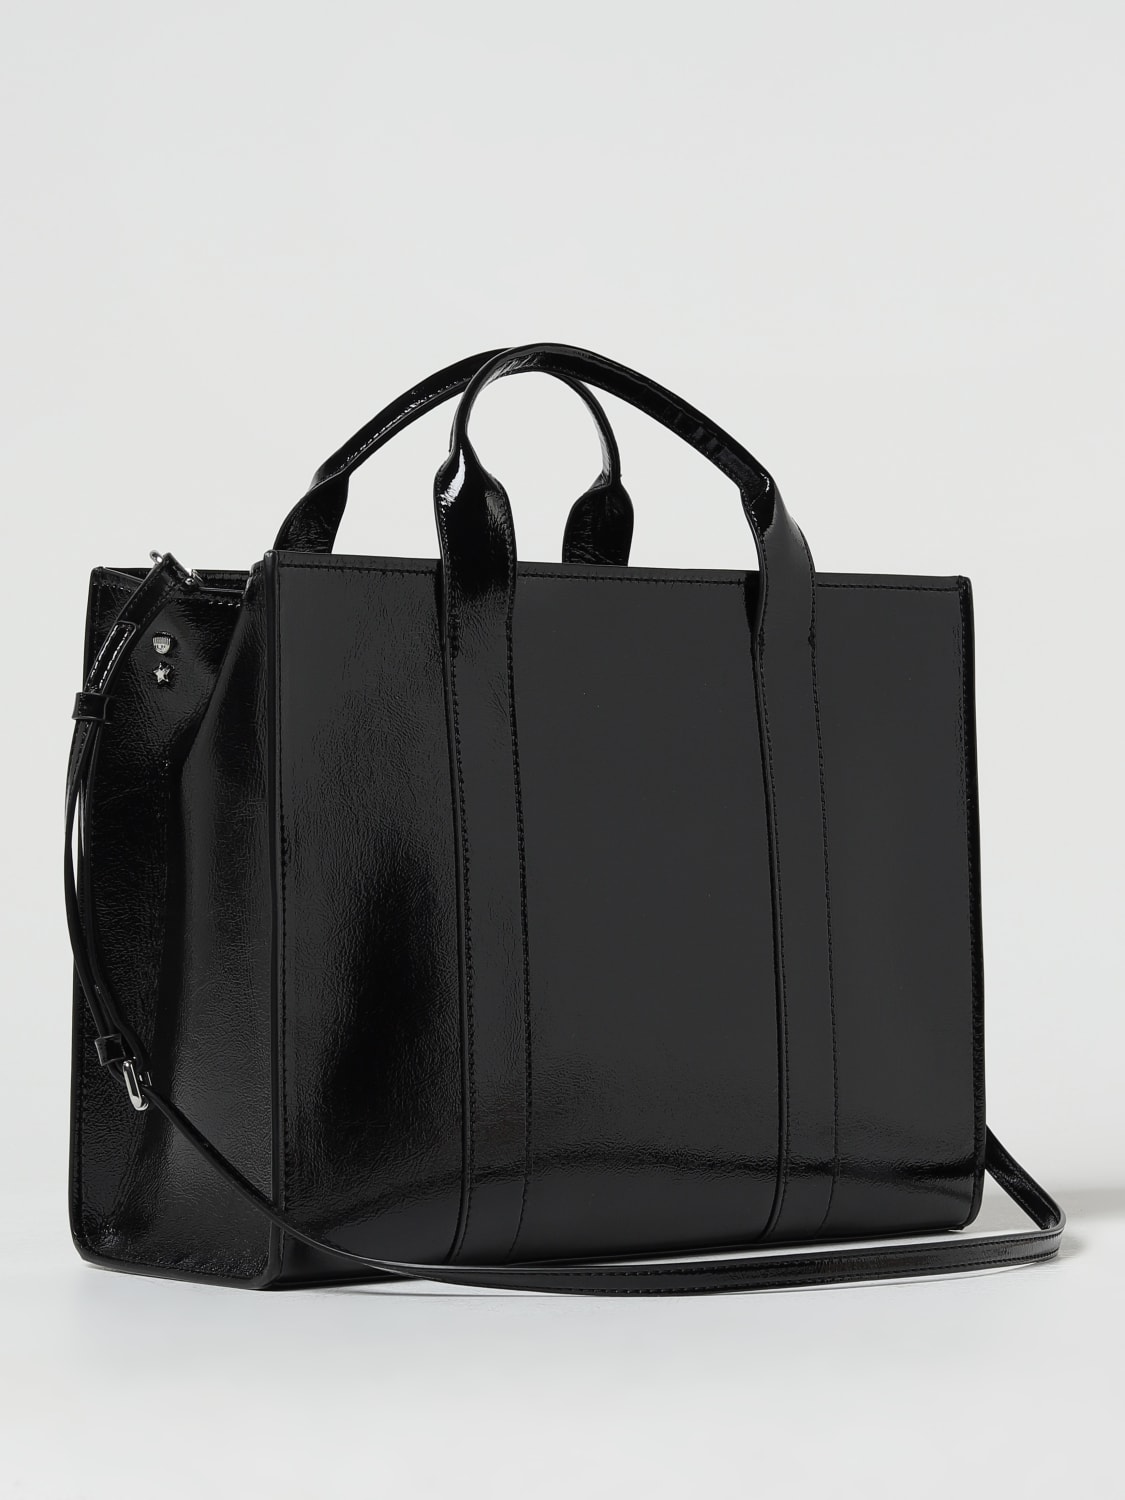 CHIARA FERRAGNI, Women's Handbag